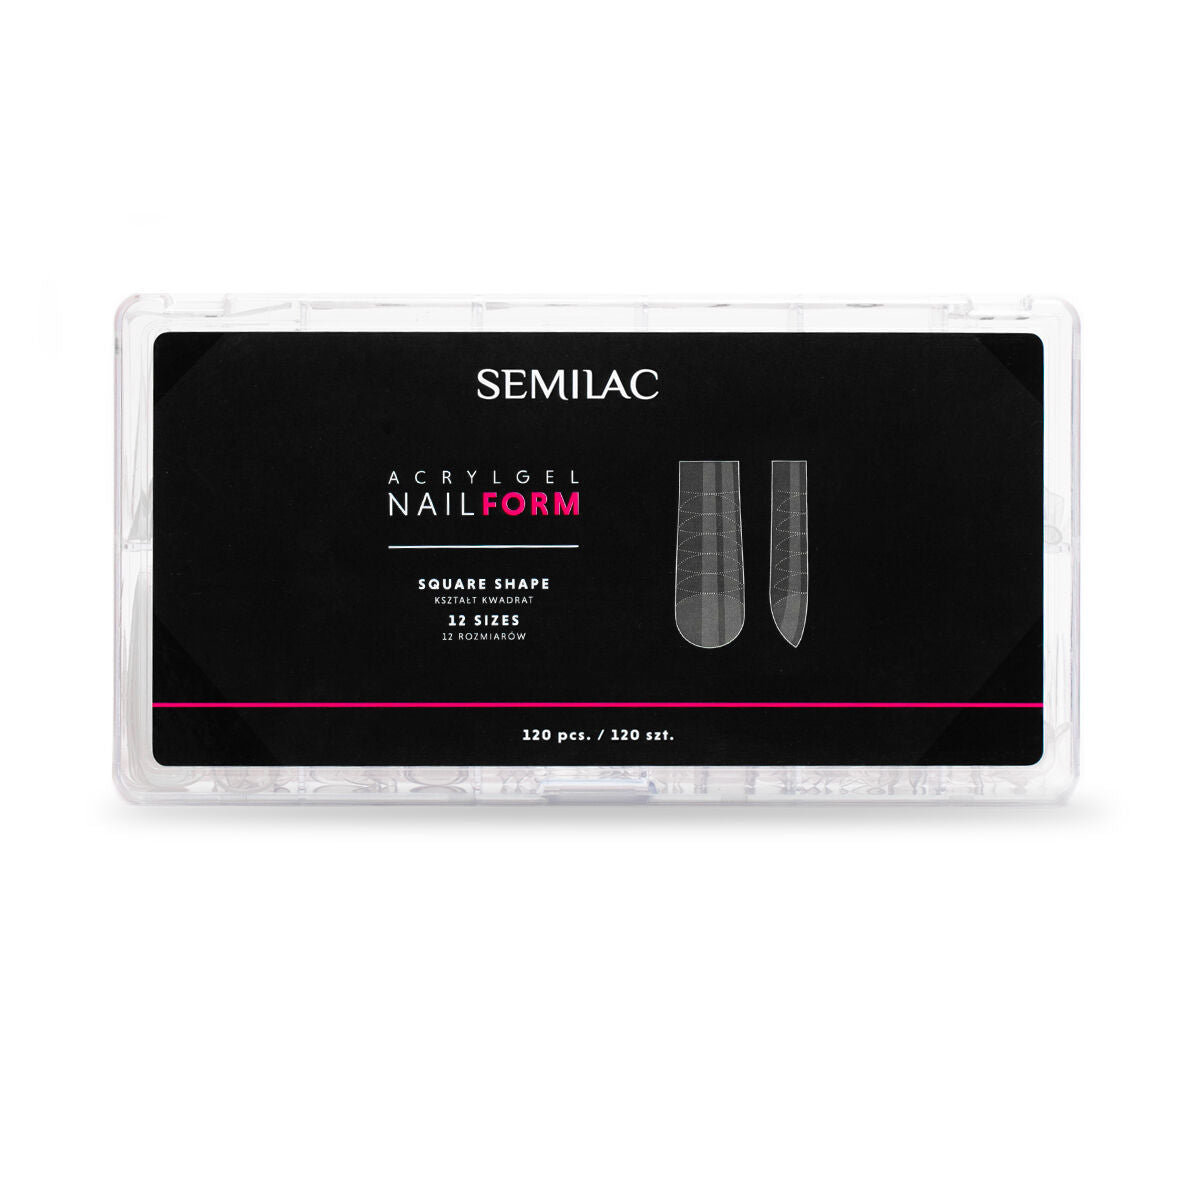 Semilac Acrylgel Nail Form Square 120 Pcs. - Semilac UK